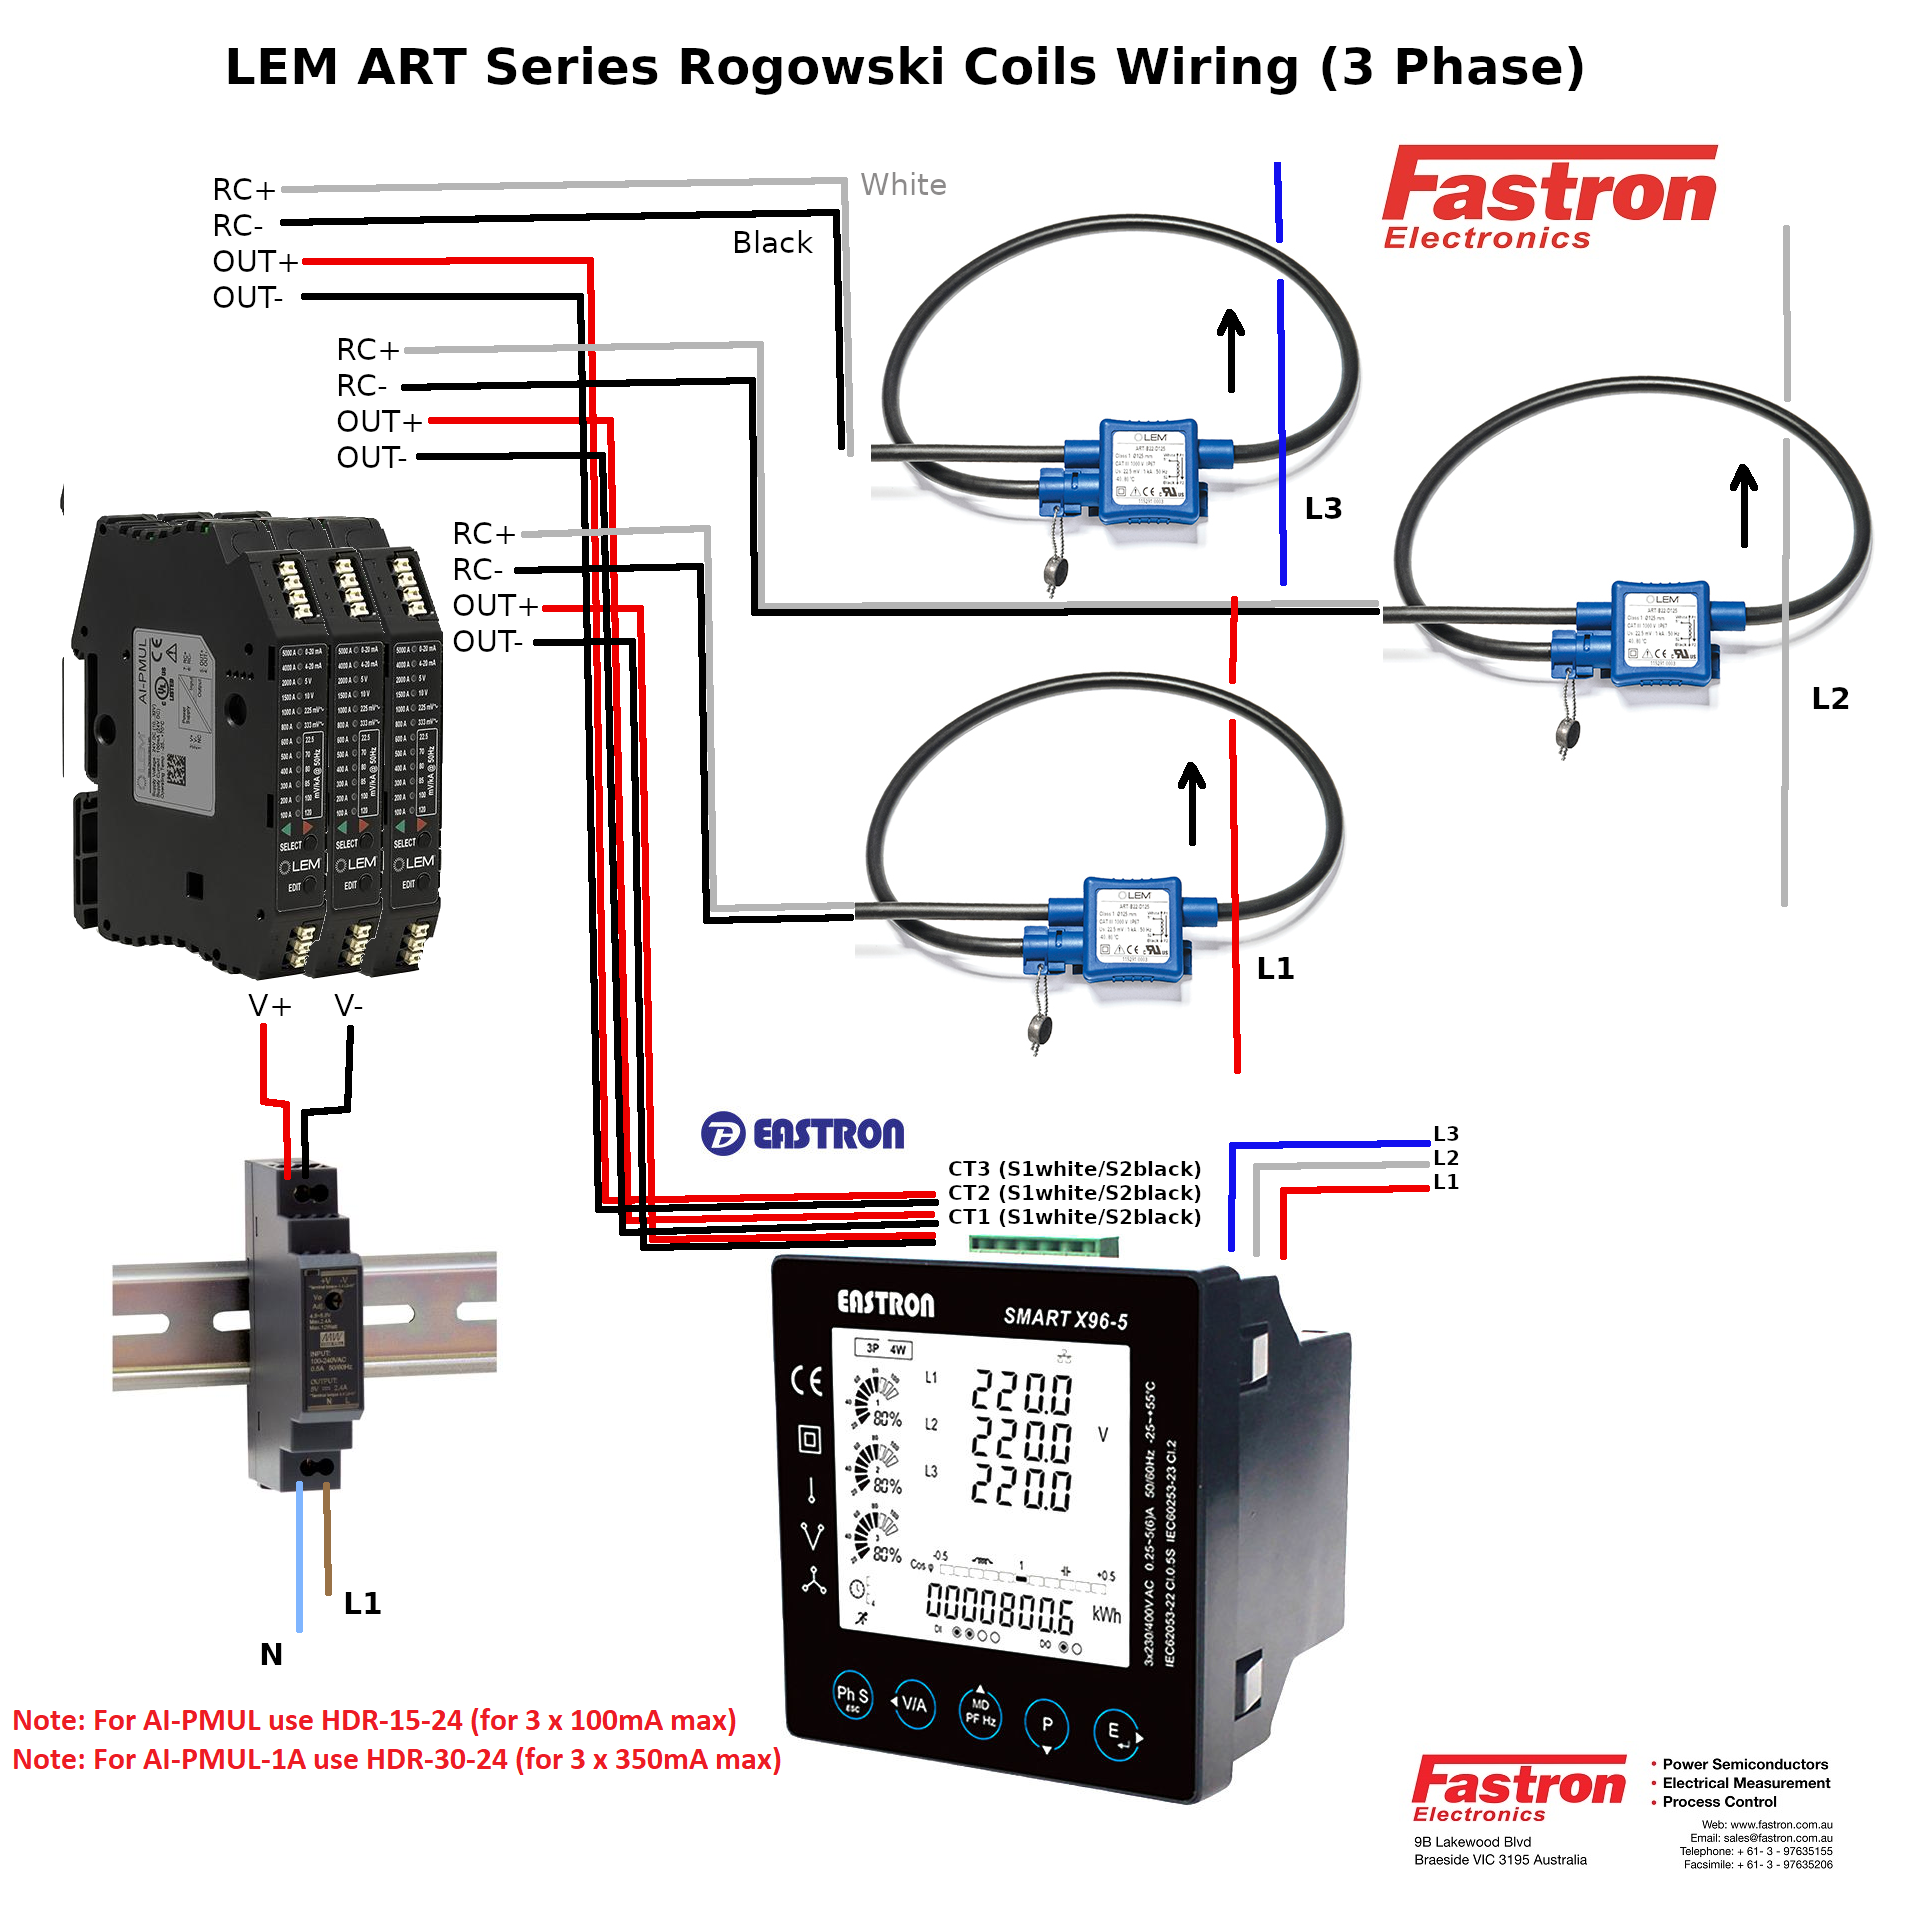 ART-B22-D70-SP6 + AI-P1A- 3 Pcs, 3 Phase Rogowski Coil Set, Class 1, 1 Amp AC, Sensitivity, and Measurement Range, 7cm Diameter, SP3 = 3M integrator cable